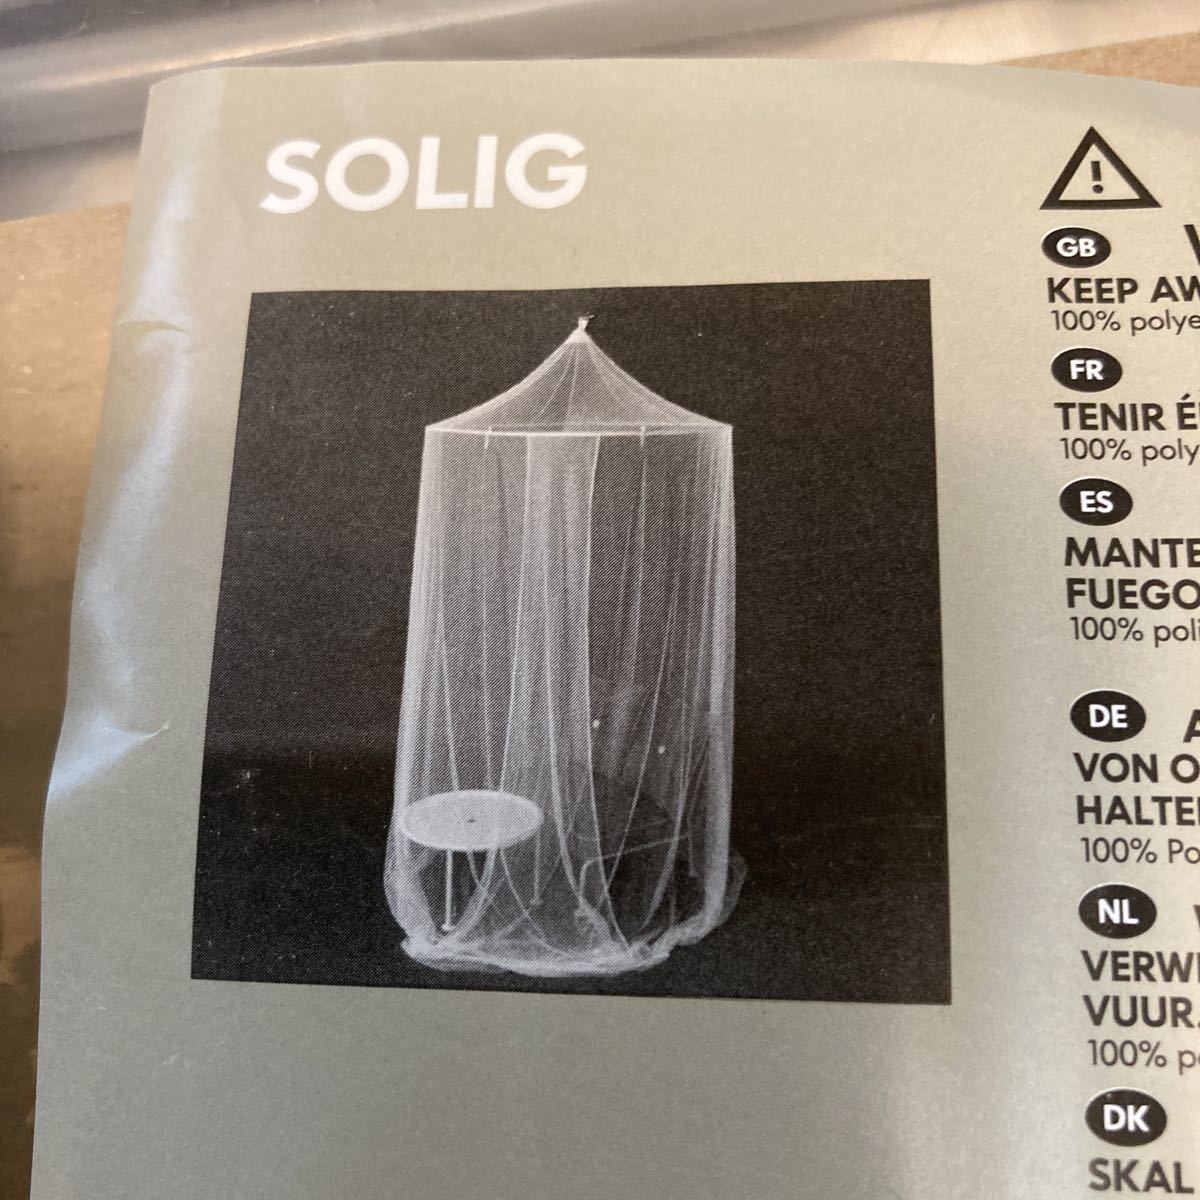  Ikea небо крышка противомоскитная сетка SOLIG инструкция по эксплуатации есть сборный тип репеллент уличный палатка ... развлечение ребенок часть магазин bed .. sama chu-ru